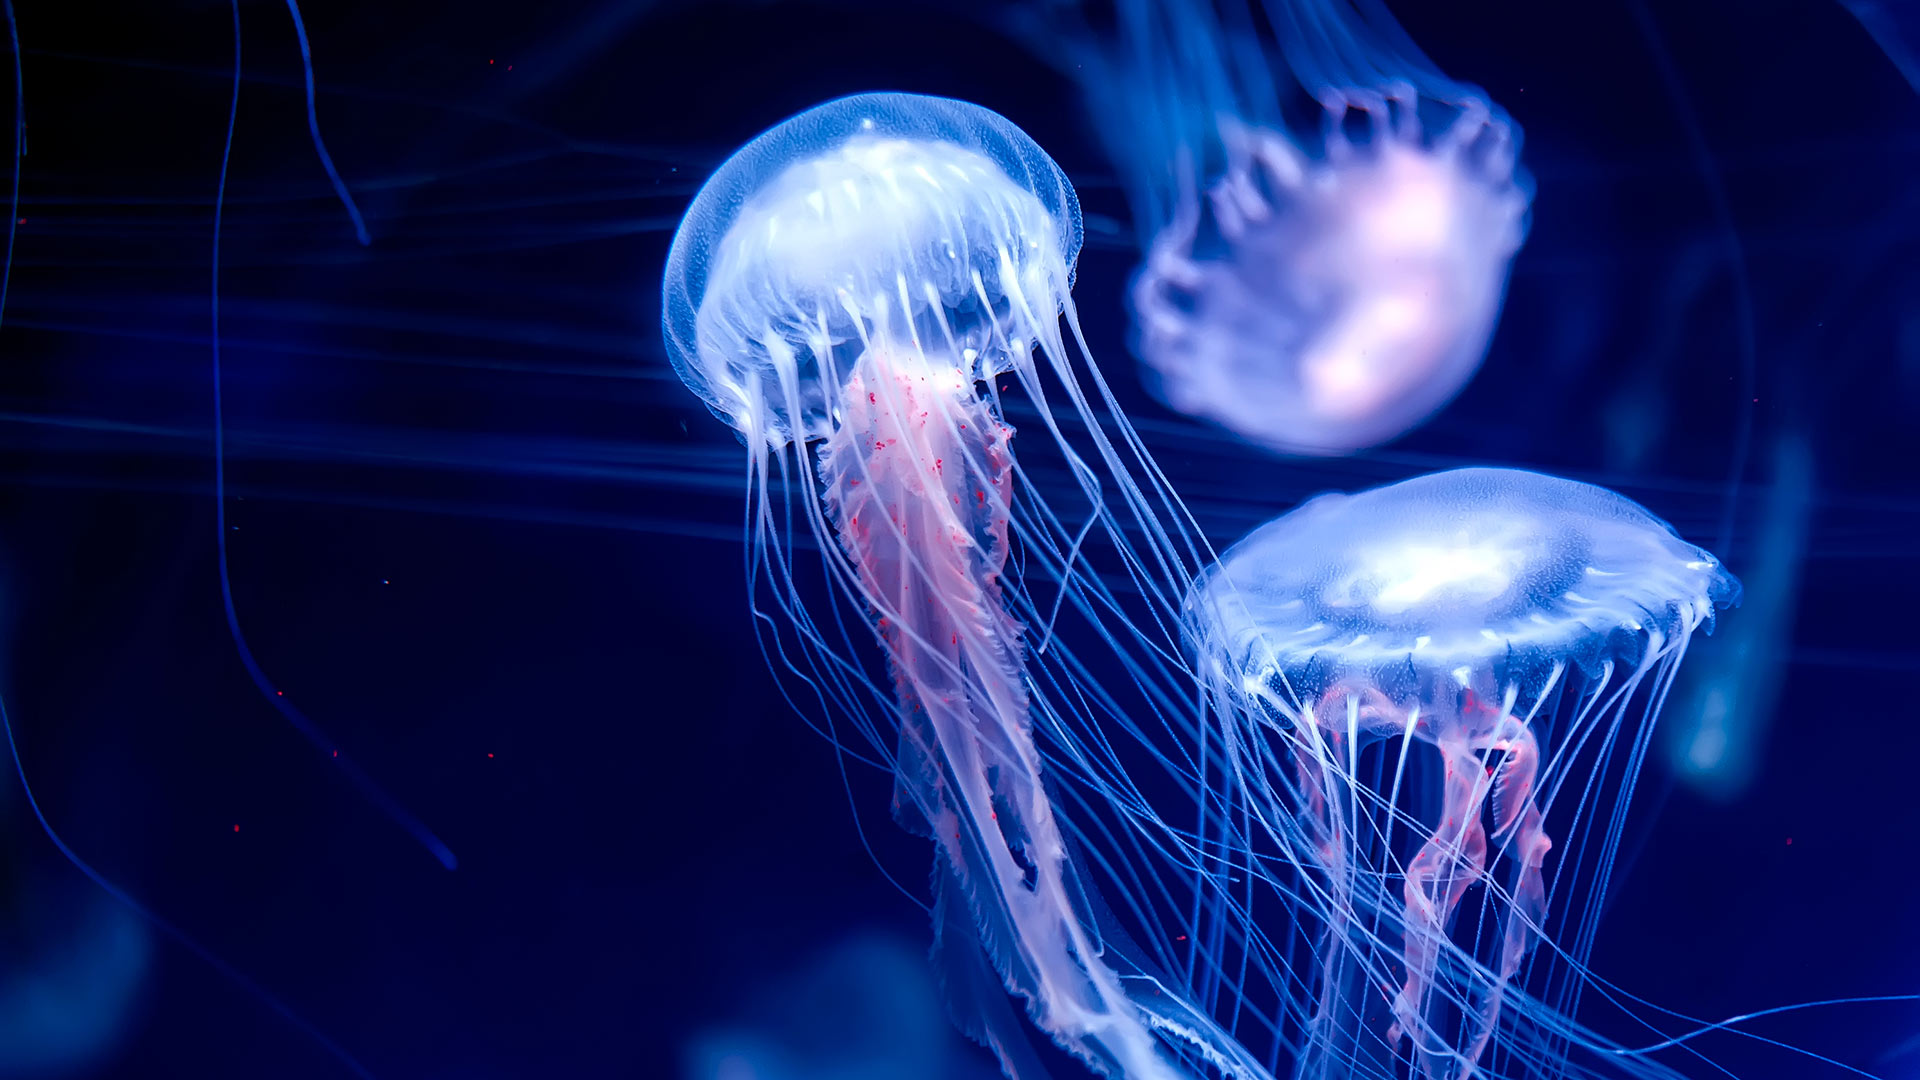 Bunch of beautiful jellyfish swimming around